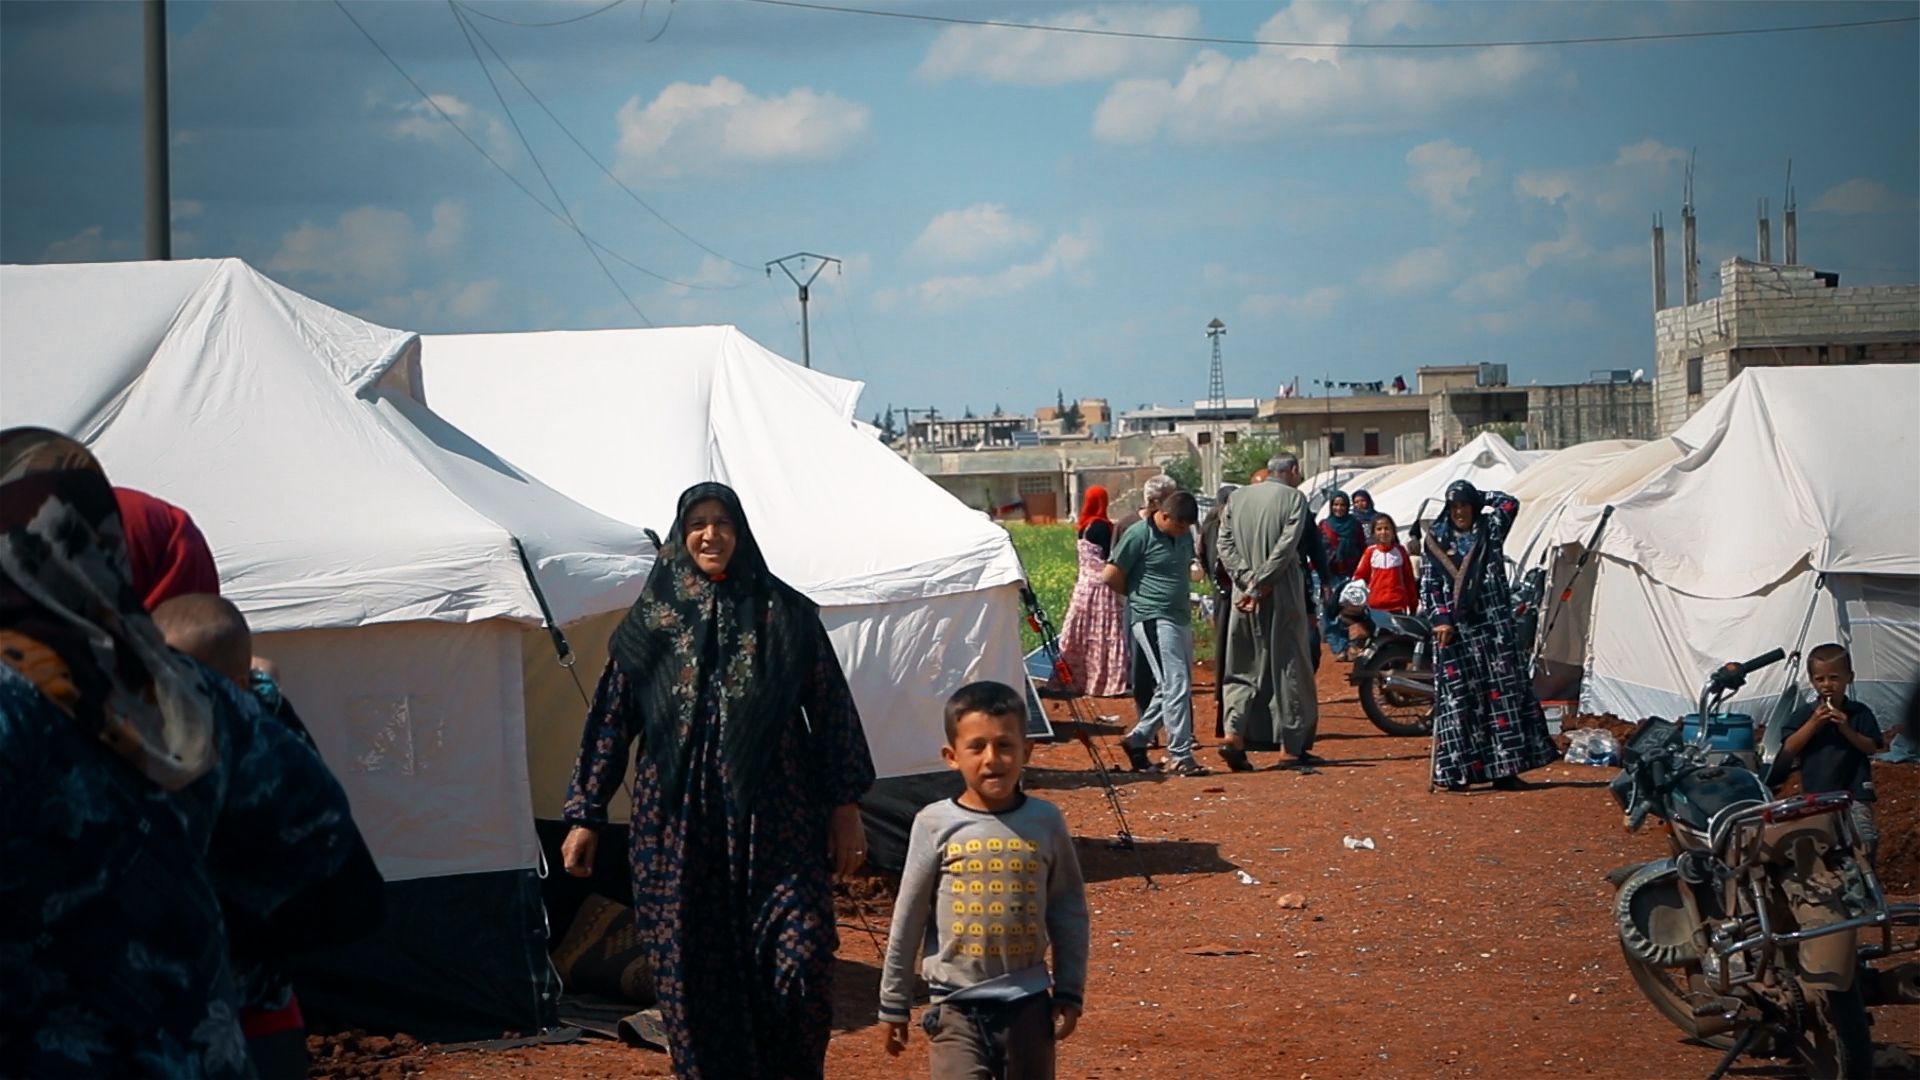 أحد المخيمات في إدلب ويظهر في الصورة عدم اتخاذ السكان لإجراءات الوقاية من فايروس كورونا -خاص 